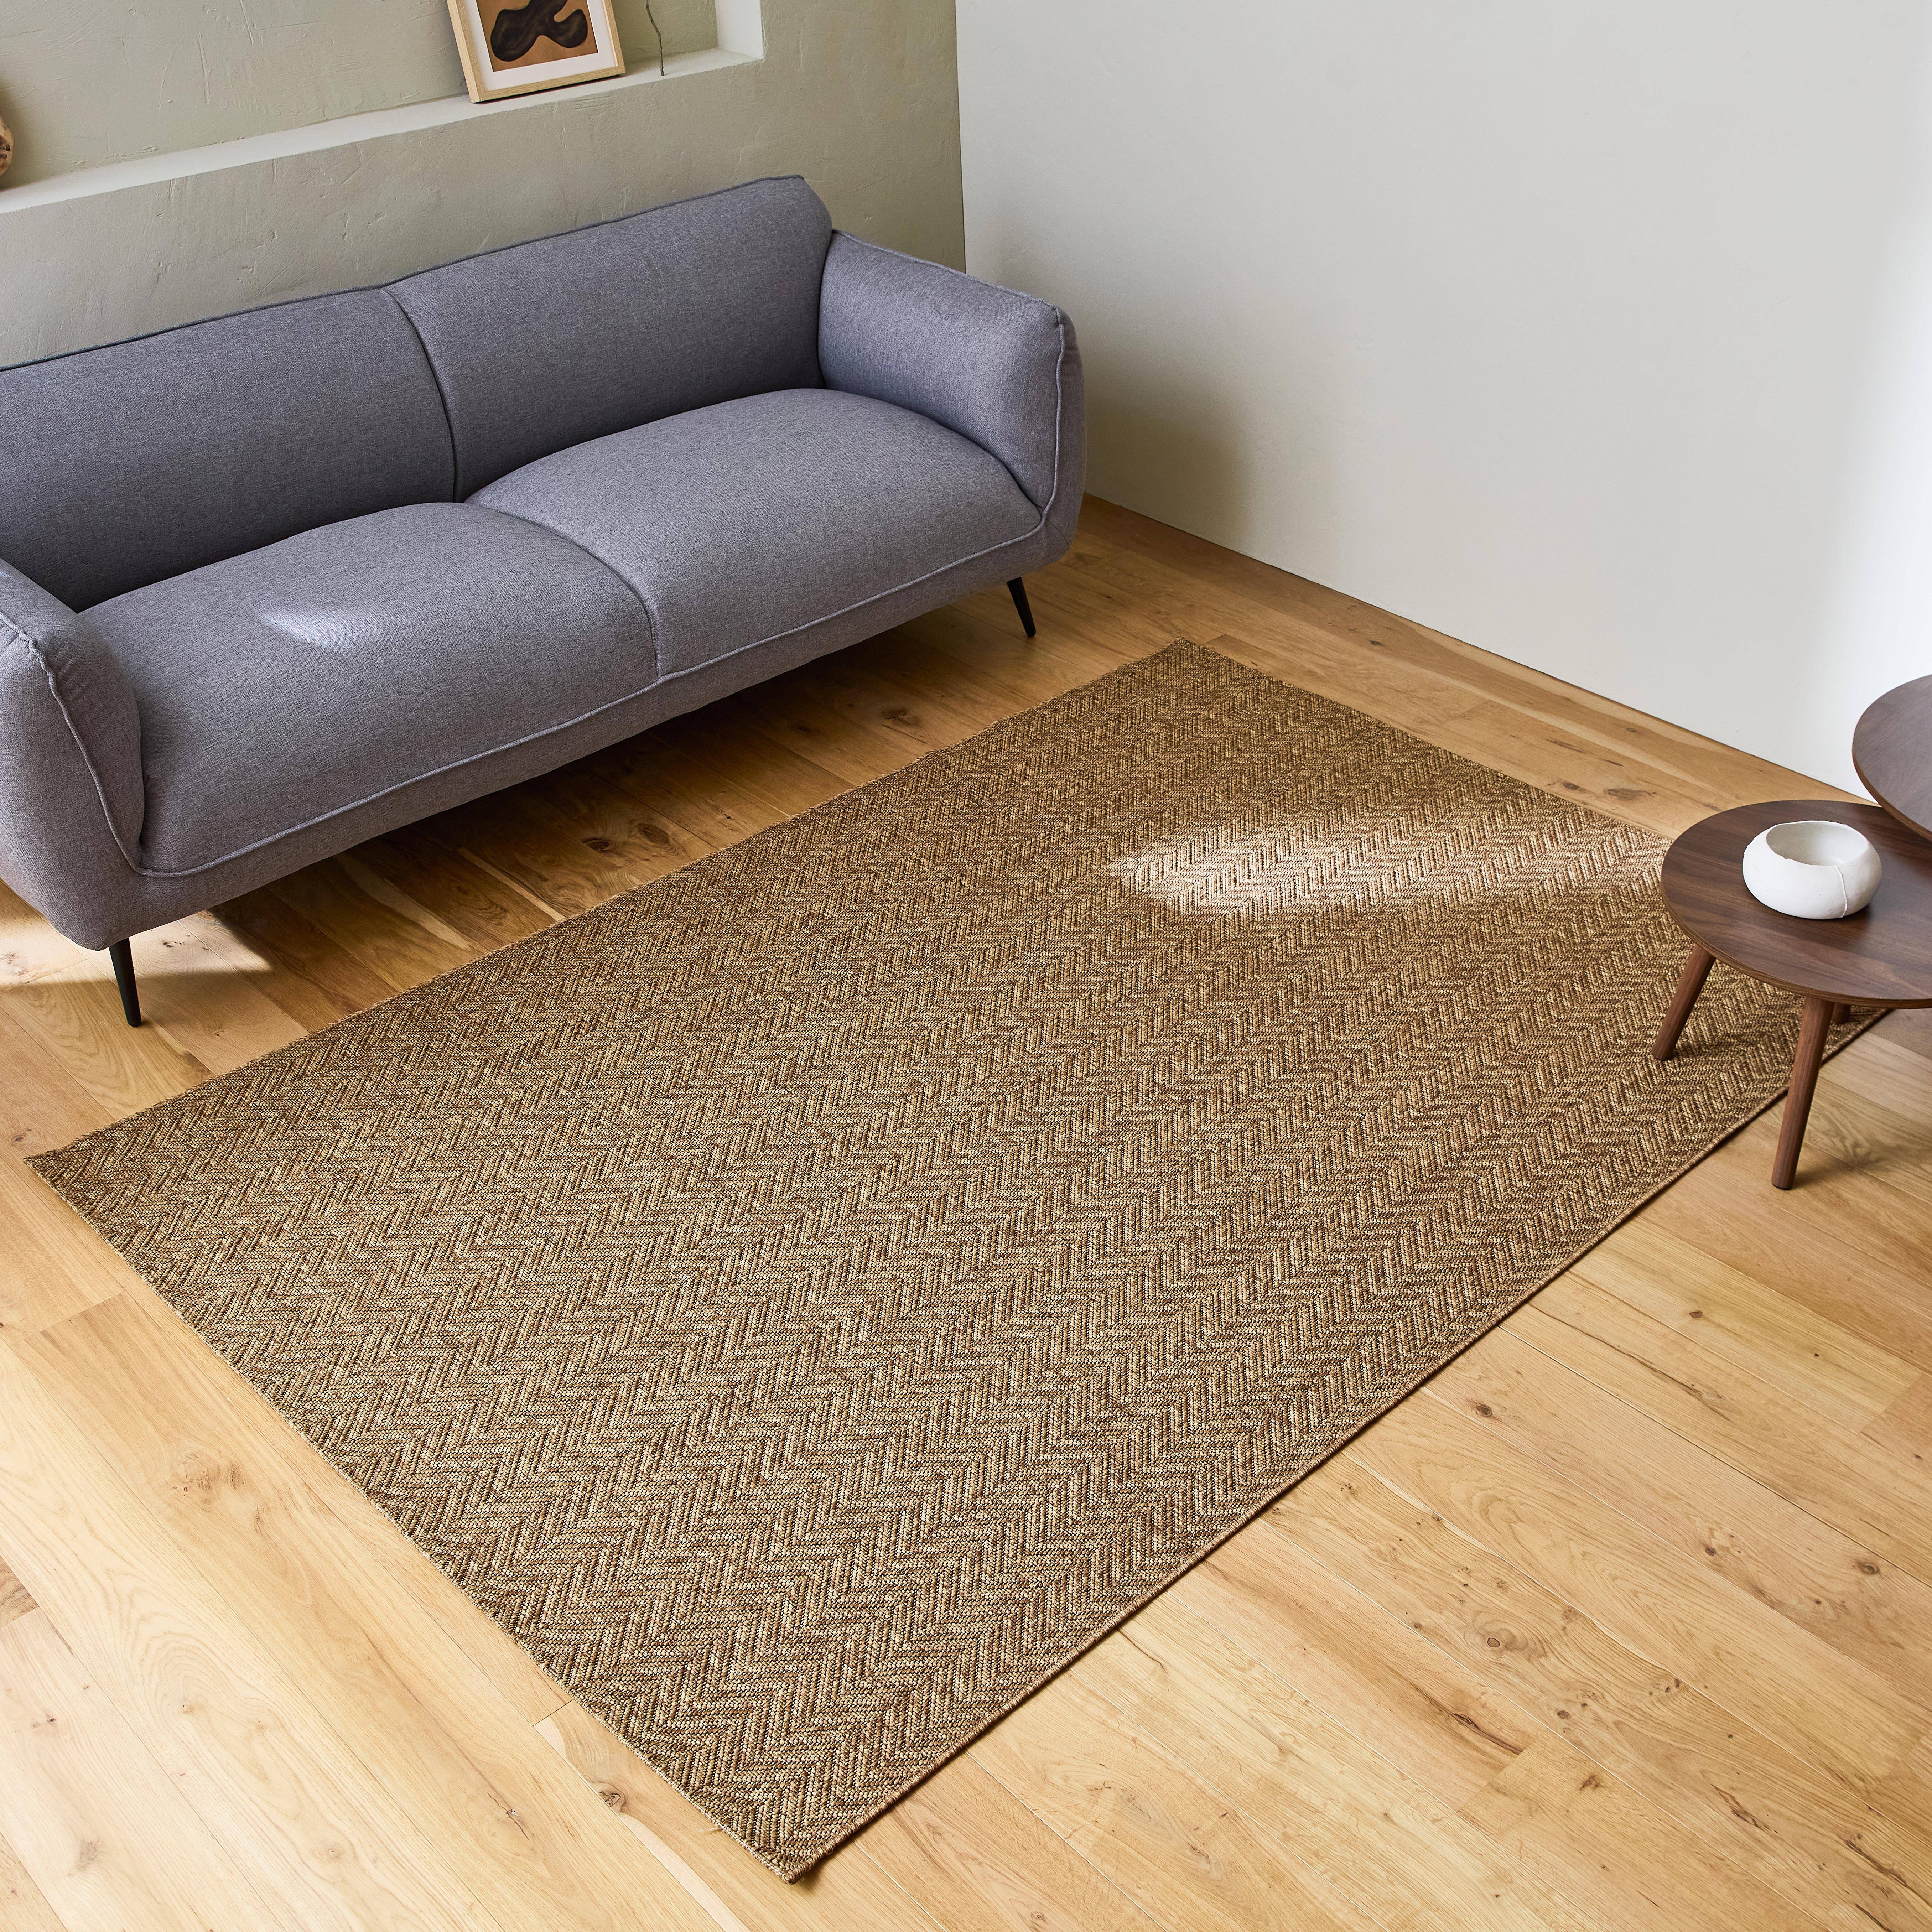 Jute-effect indoor/outdoor carpet in caramel, Oliver, 160 x 230 cm,sweeek,Photo1